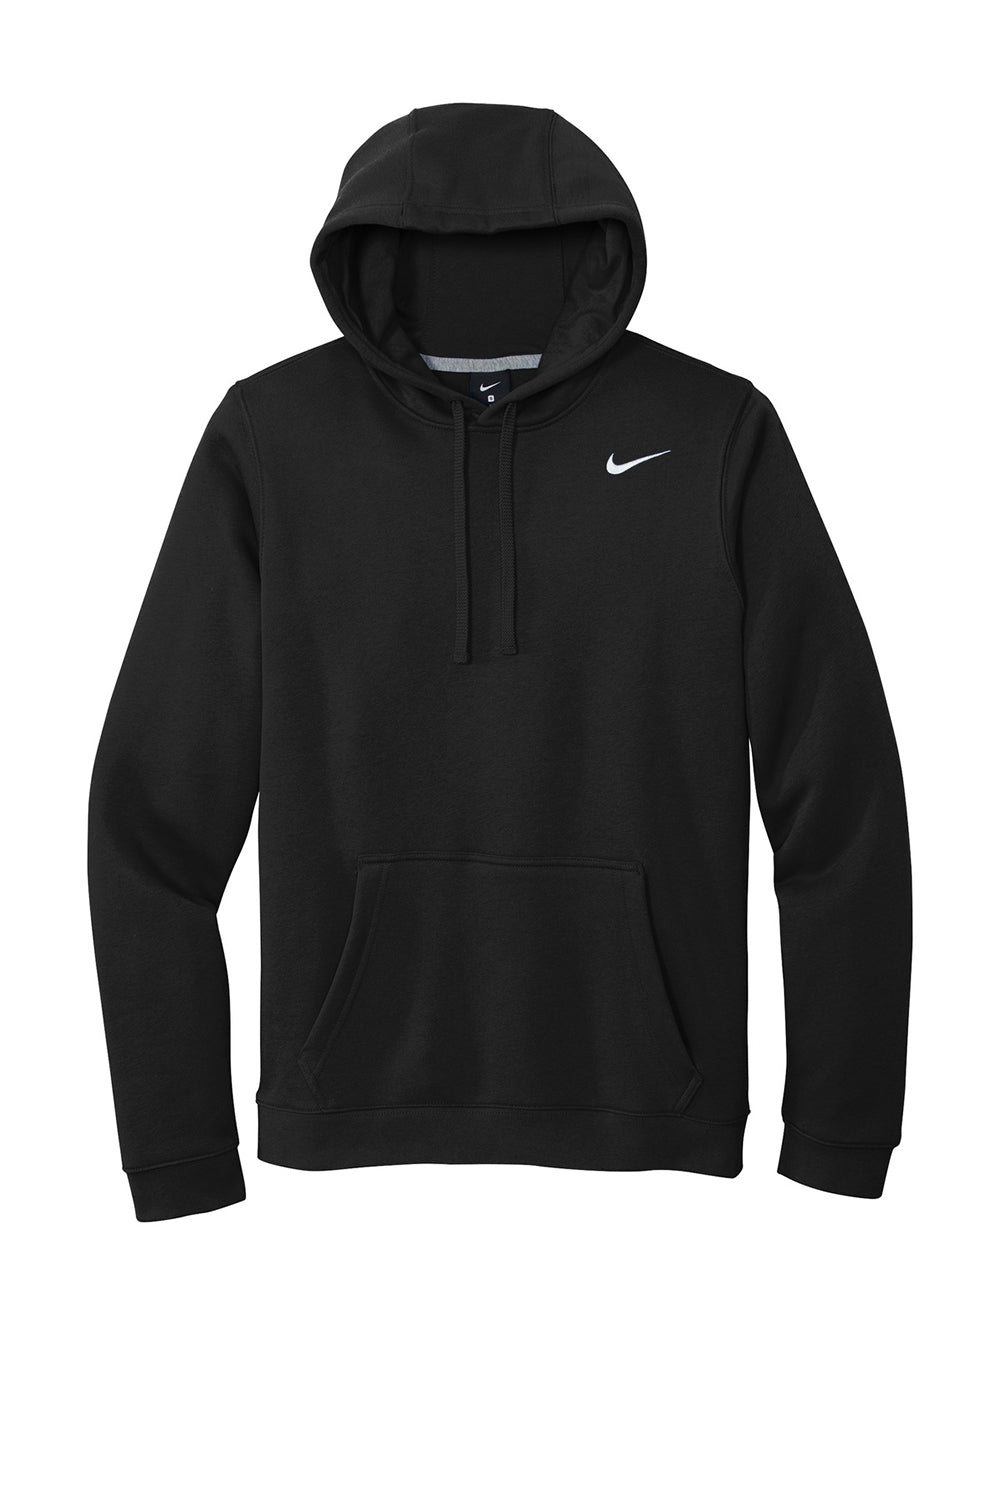 Nike CJ1611 Mens Club Fleece Hooded Sweatshirt Hoodie Black Flat Front